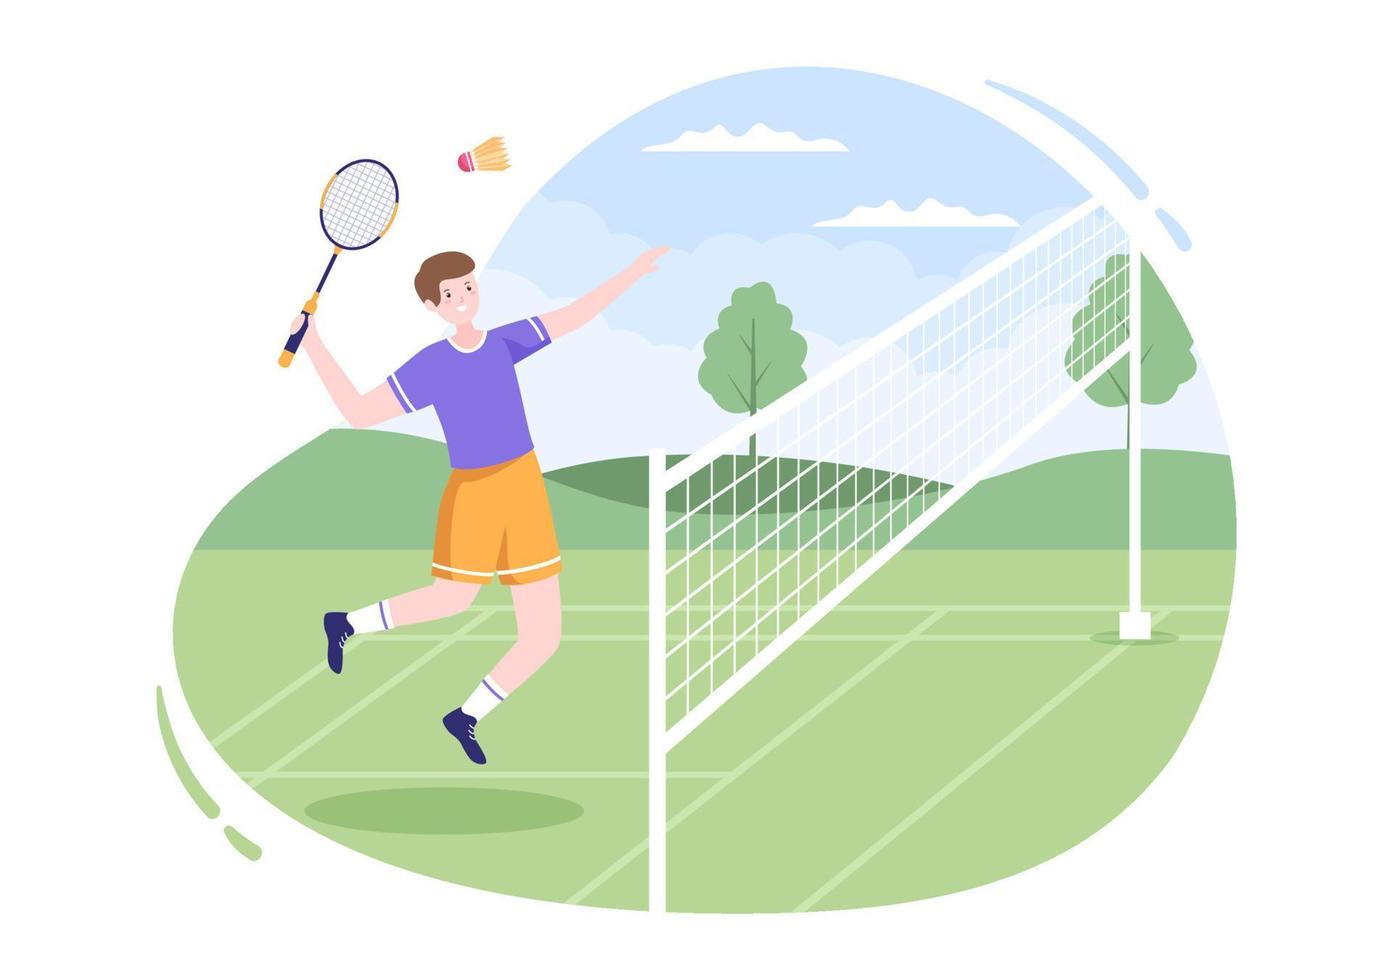 badmintonspelare med skyttel på banan i platt stil tecknad illustration. spelar gärna sportspel och fritidsdesign vektor